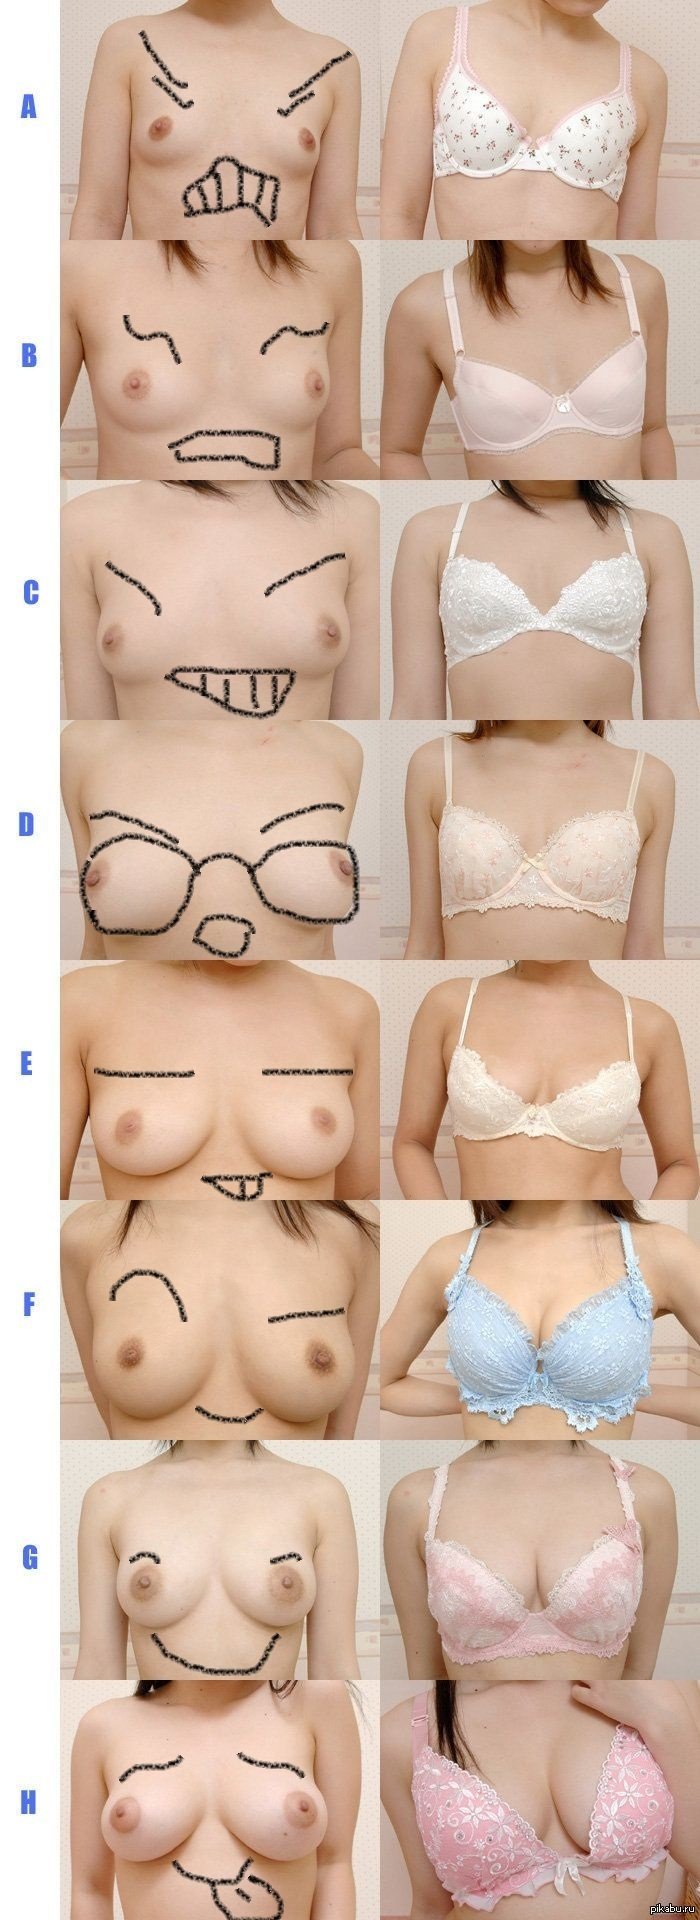 Порно разные формы груди